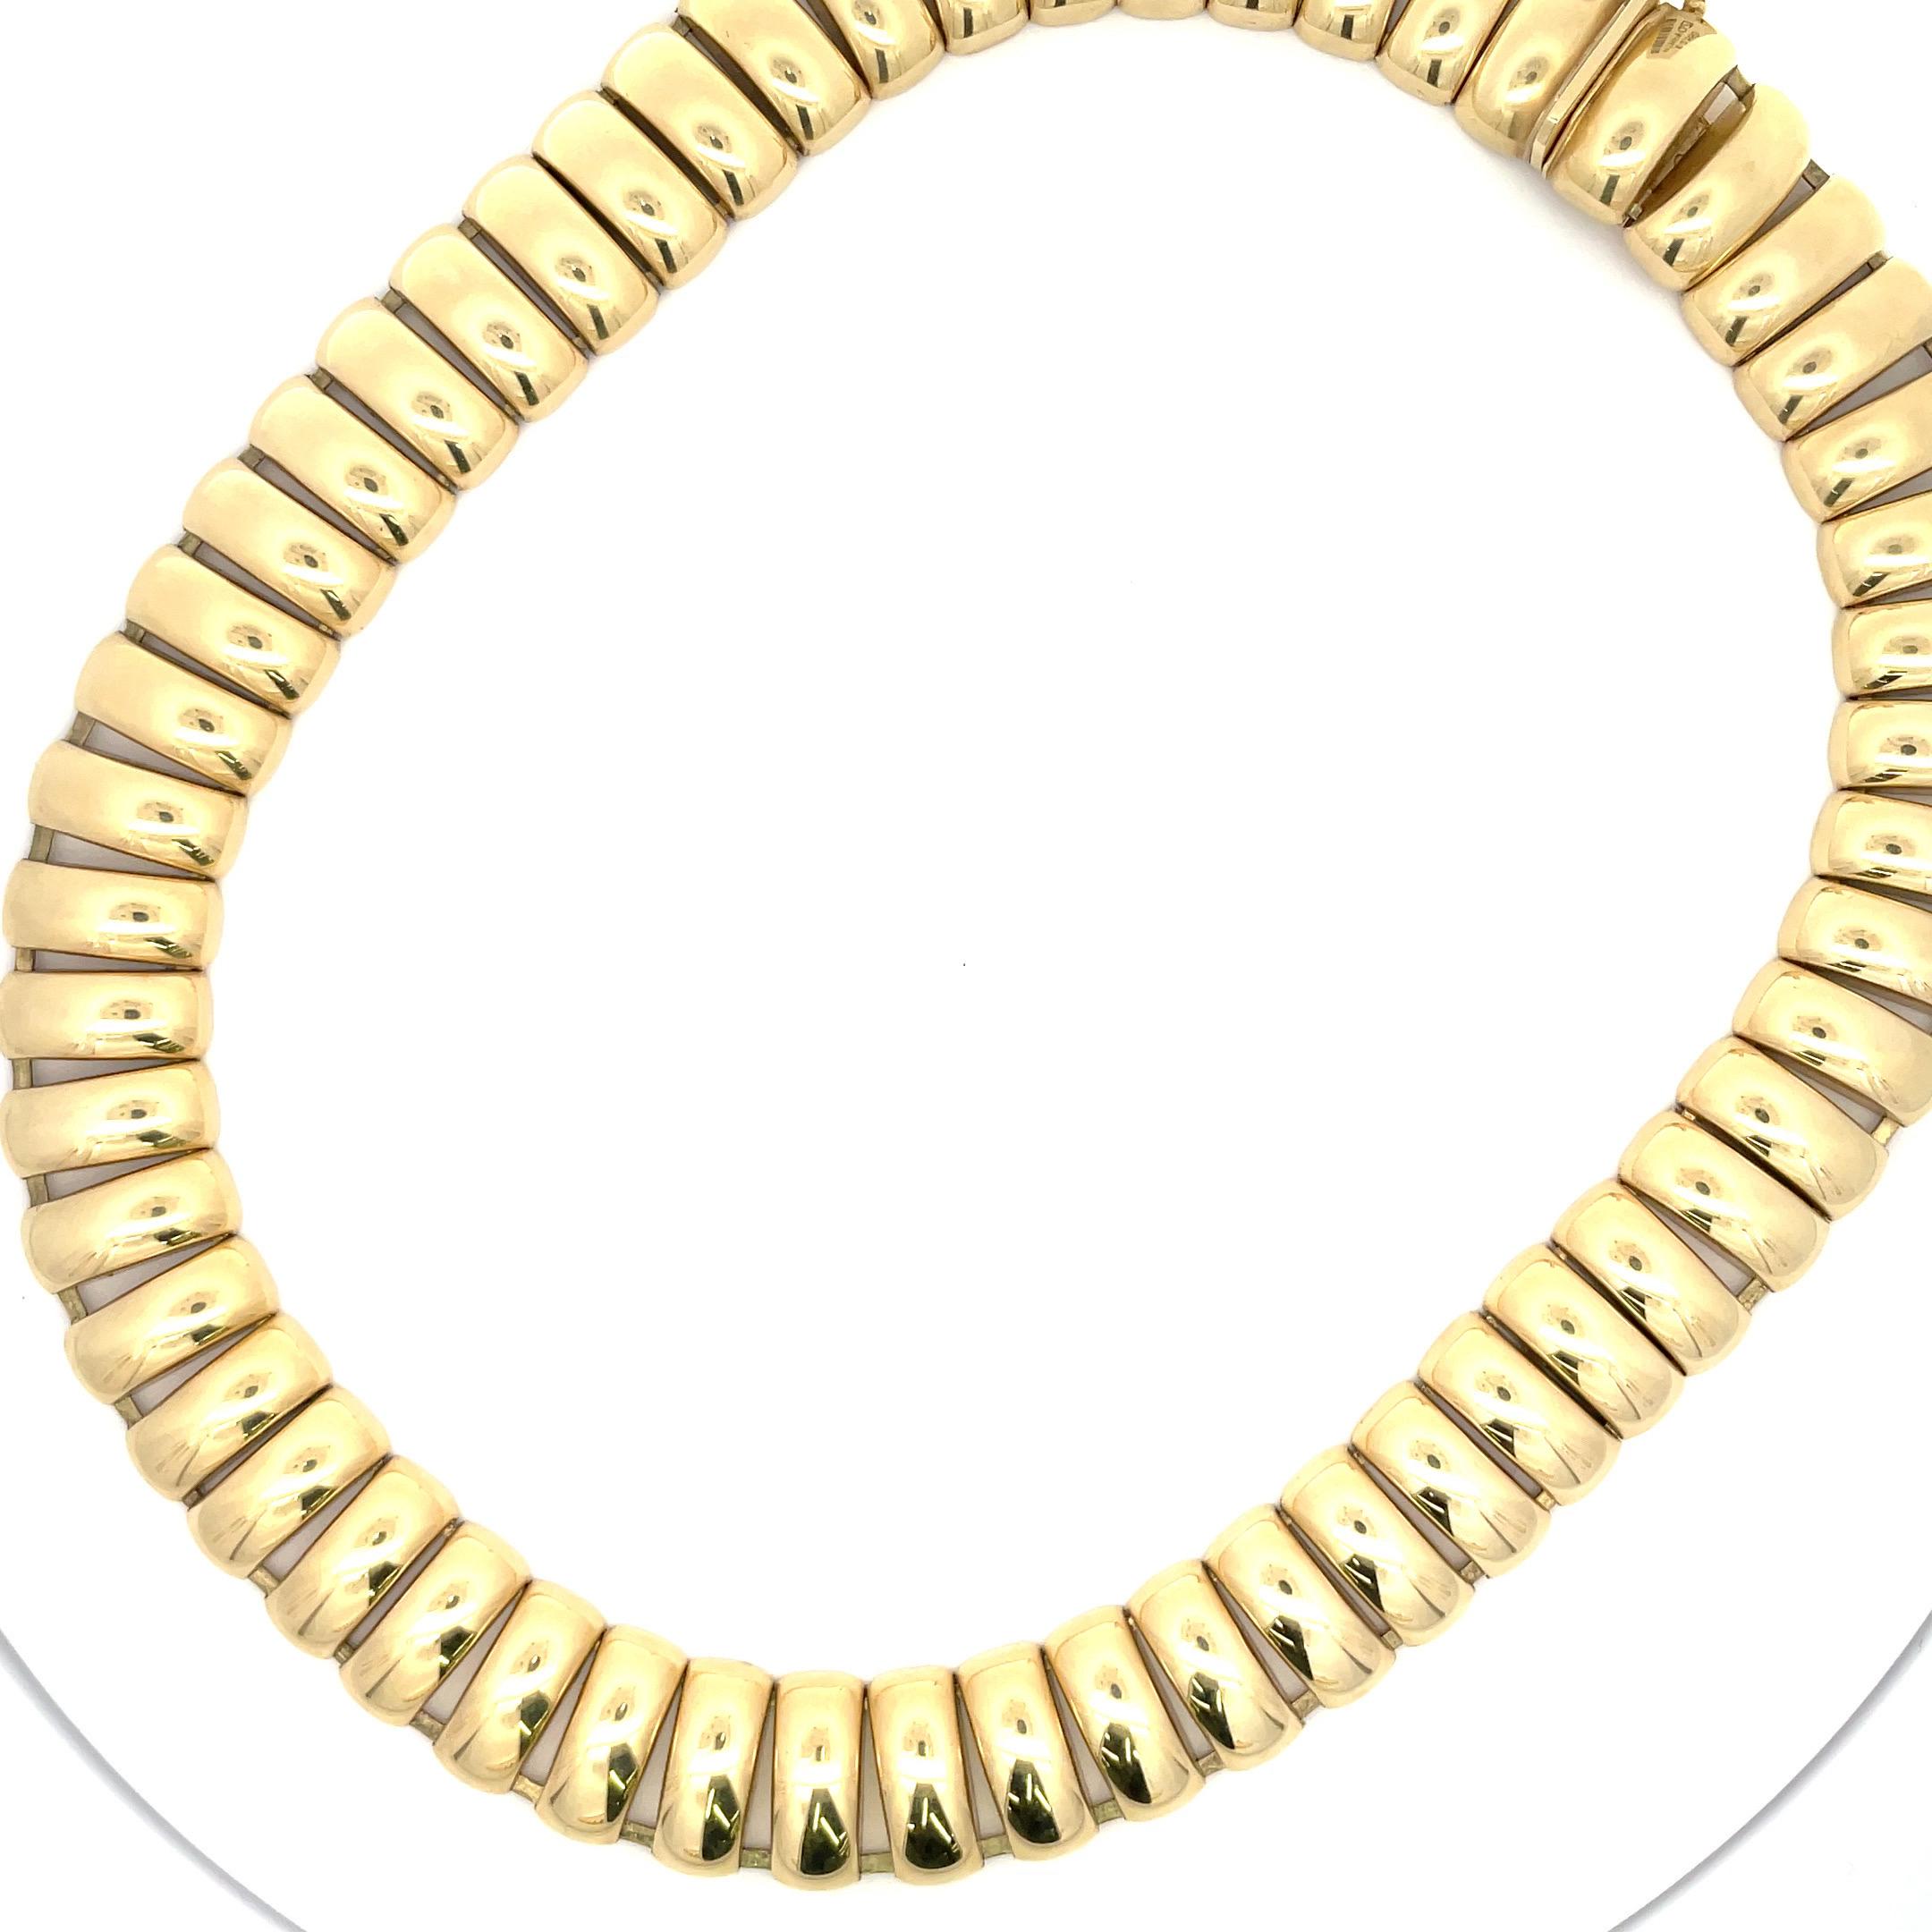 dm gold necklace